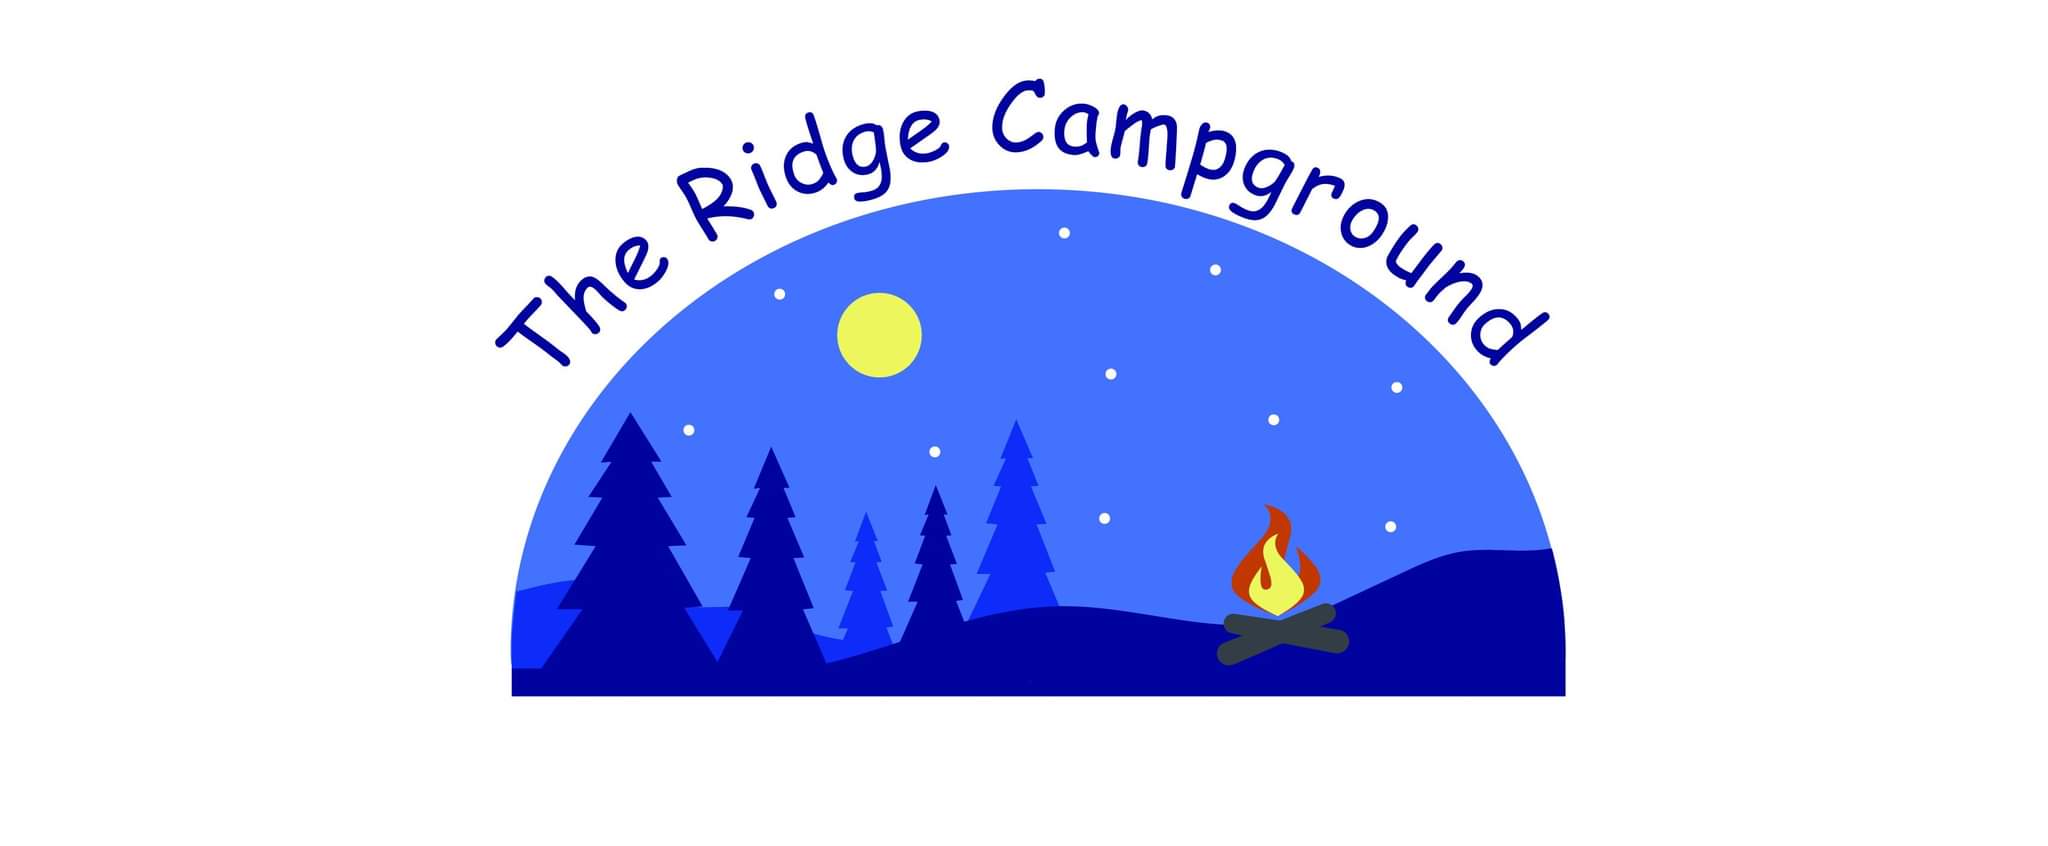 The Ridge Campground